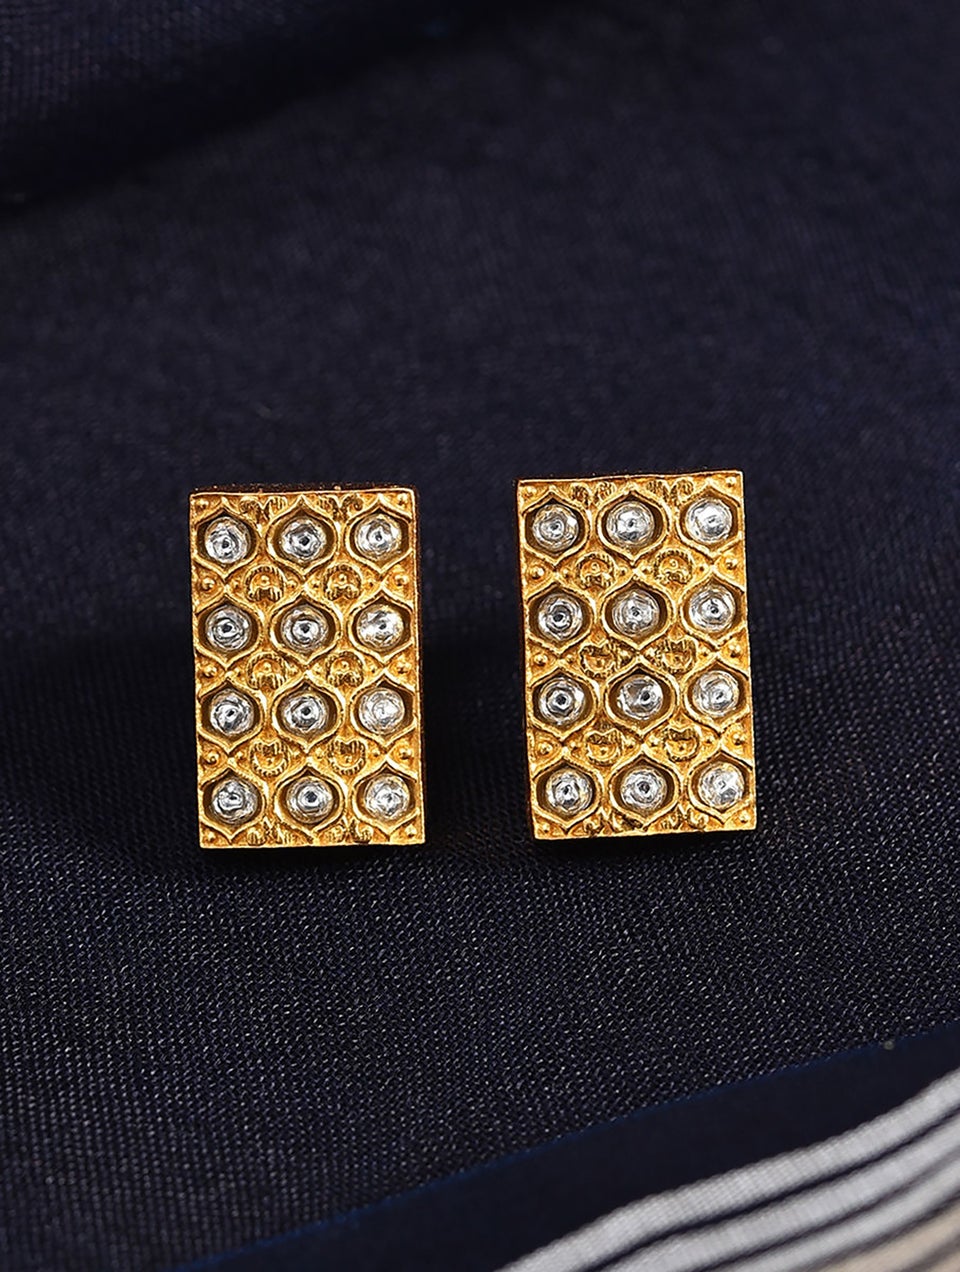 Women Gold Earrings